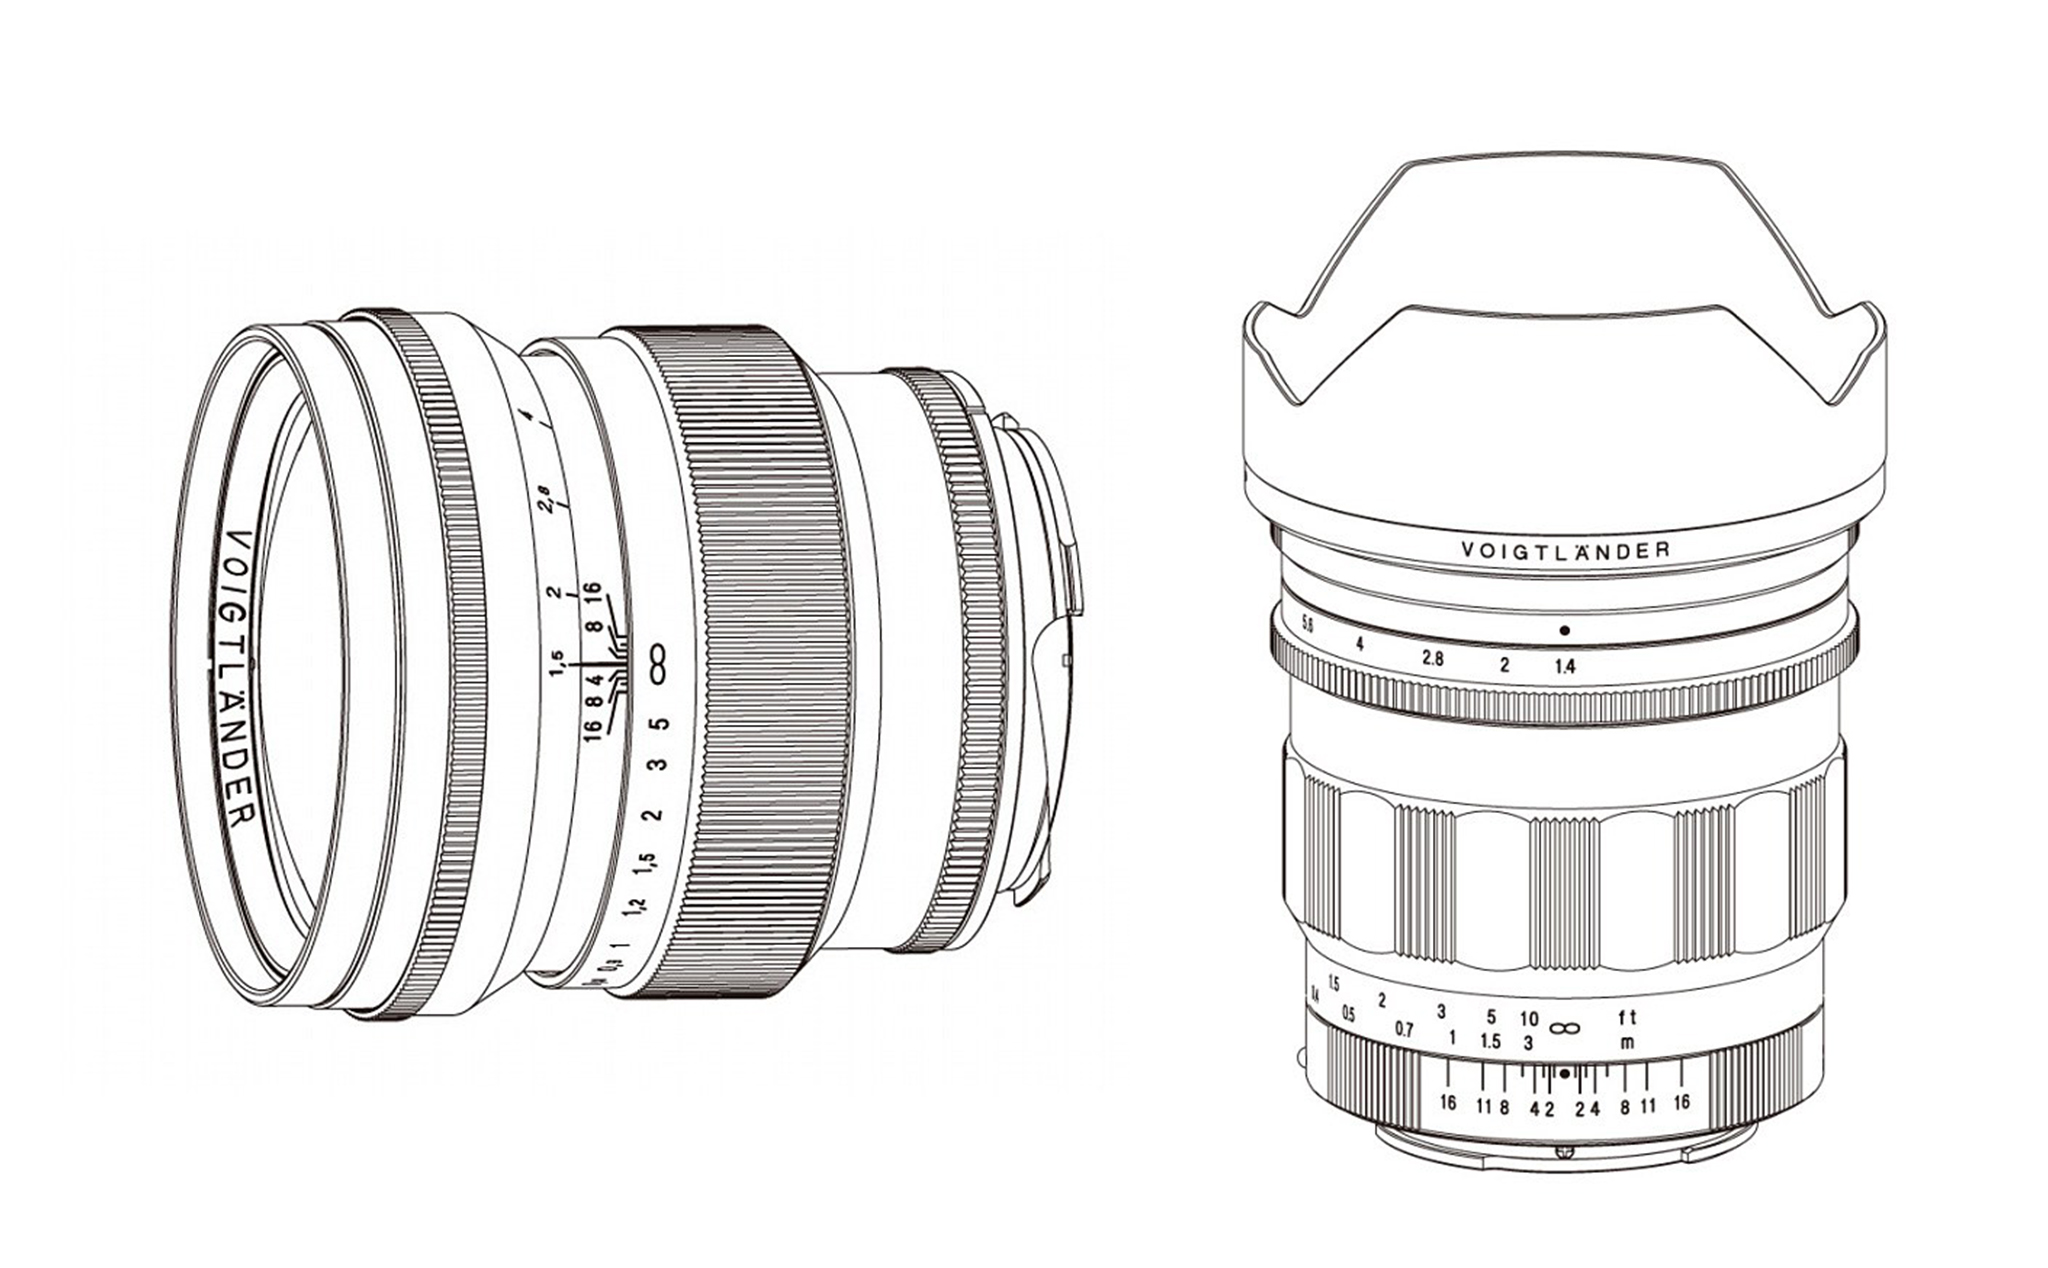 [CP+ 2019] Voigtlander ra mắt 2 ống kính: Nokton 21 mm f/1.4 ngàm Sony E và 75 mm f/1.5 ngàm VM